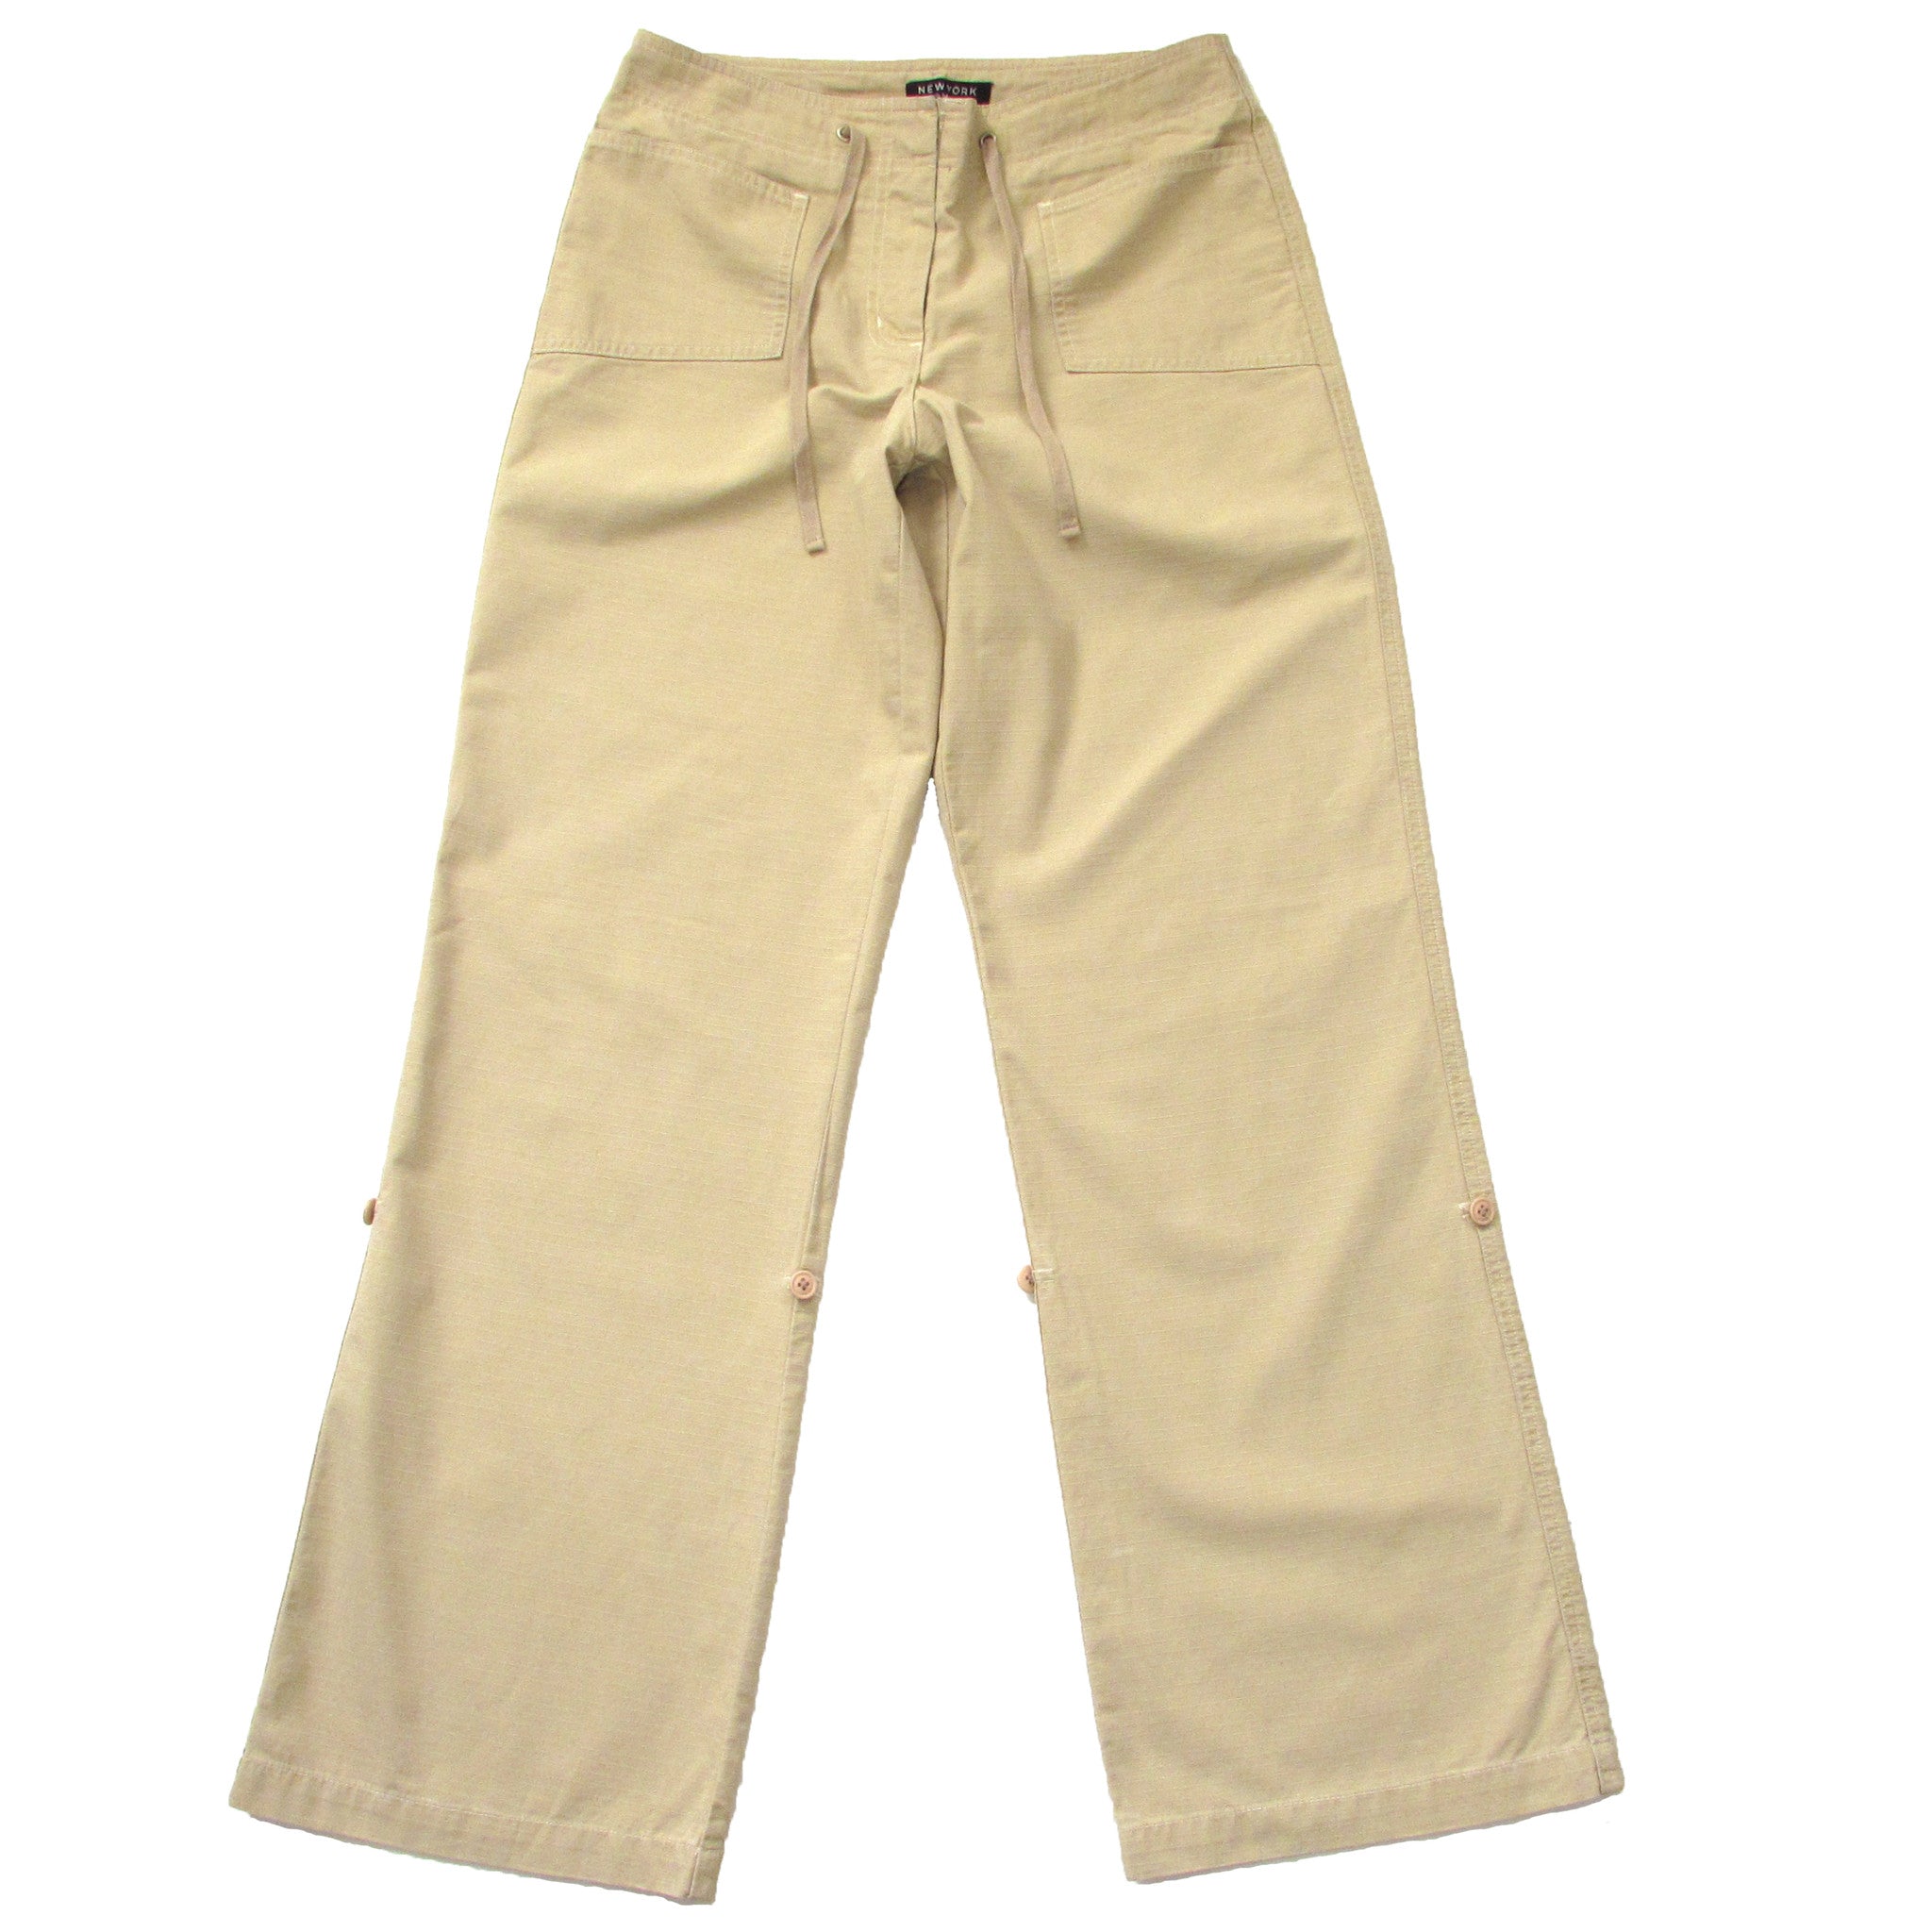 New York And Company Khaki Cargo Pants Full Look